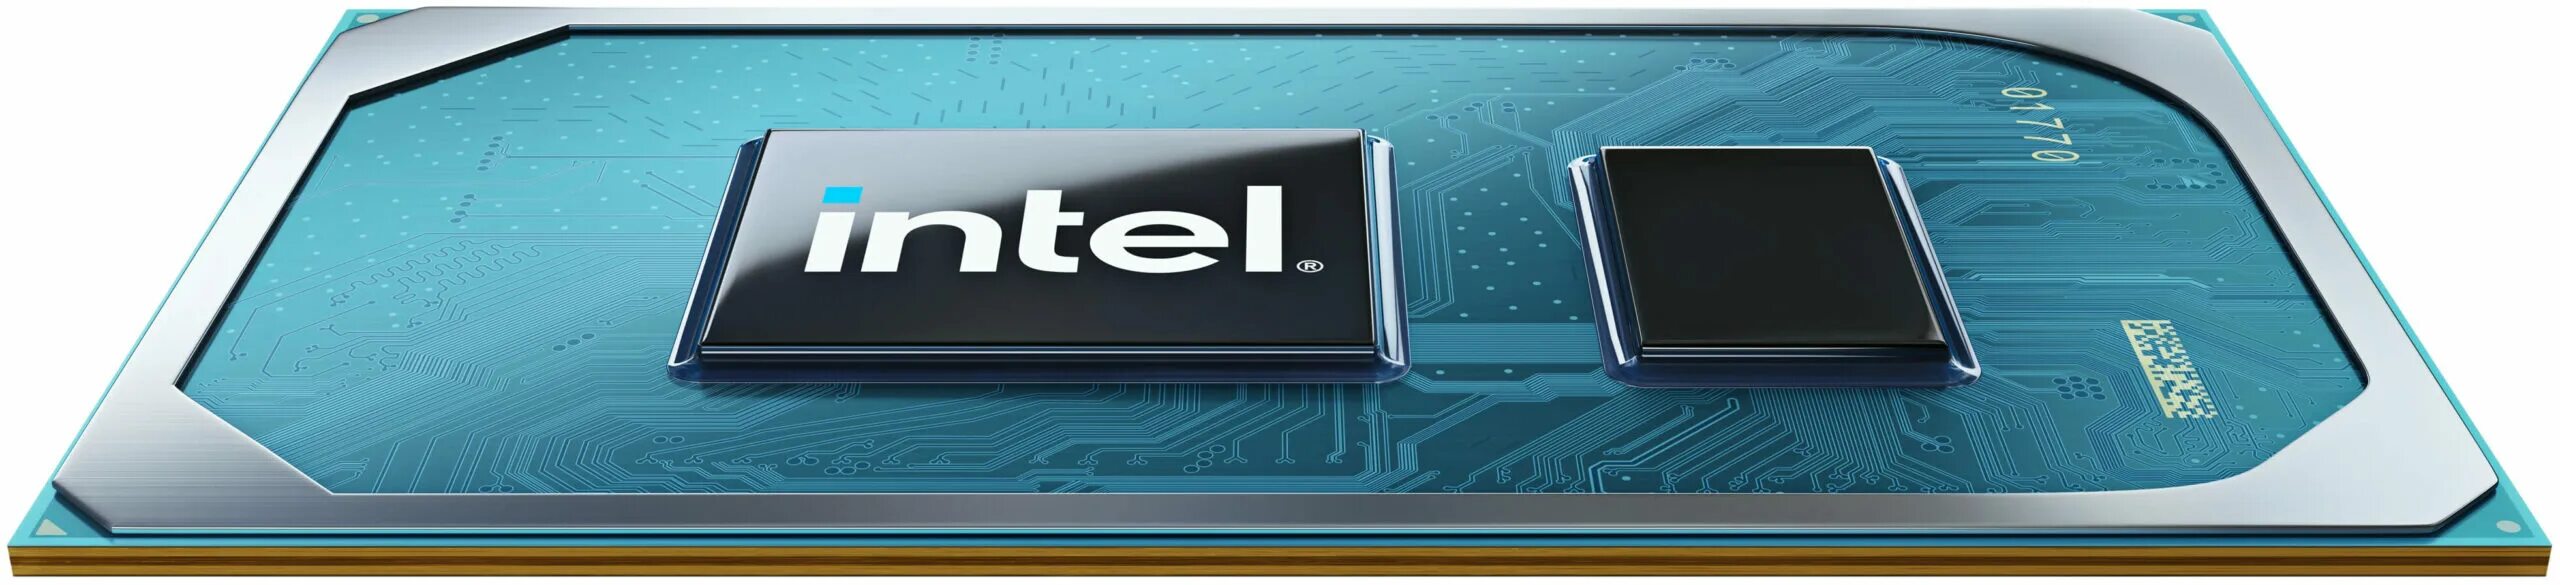 Интел 11. 11 Поколение процессоров Intel. Процессор Core i5 11th Gen. Intel Core 11 поколения logo. Процессоры Intel Tiger Lake.